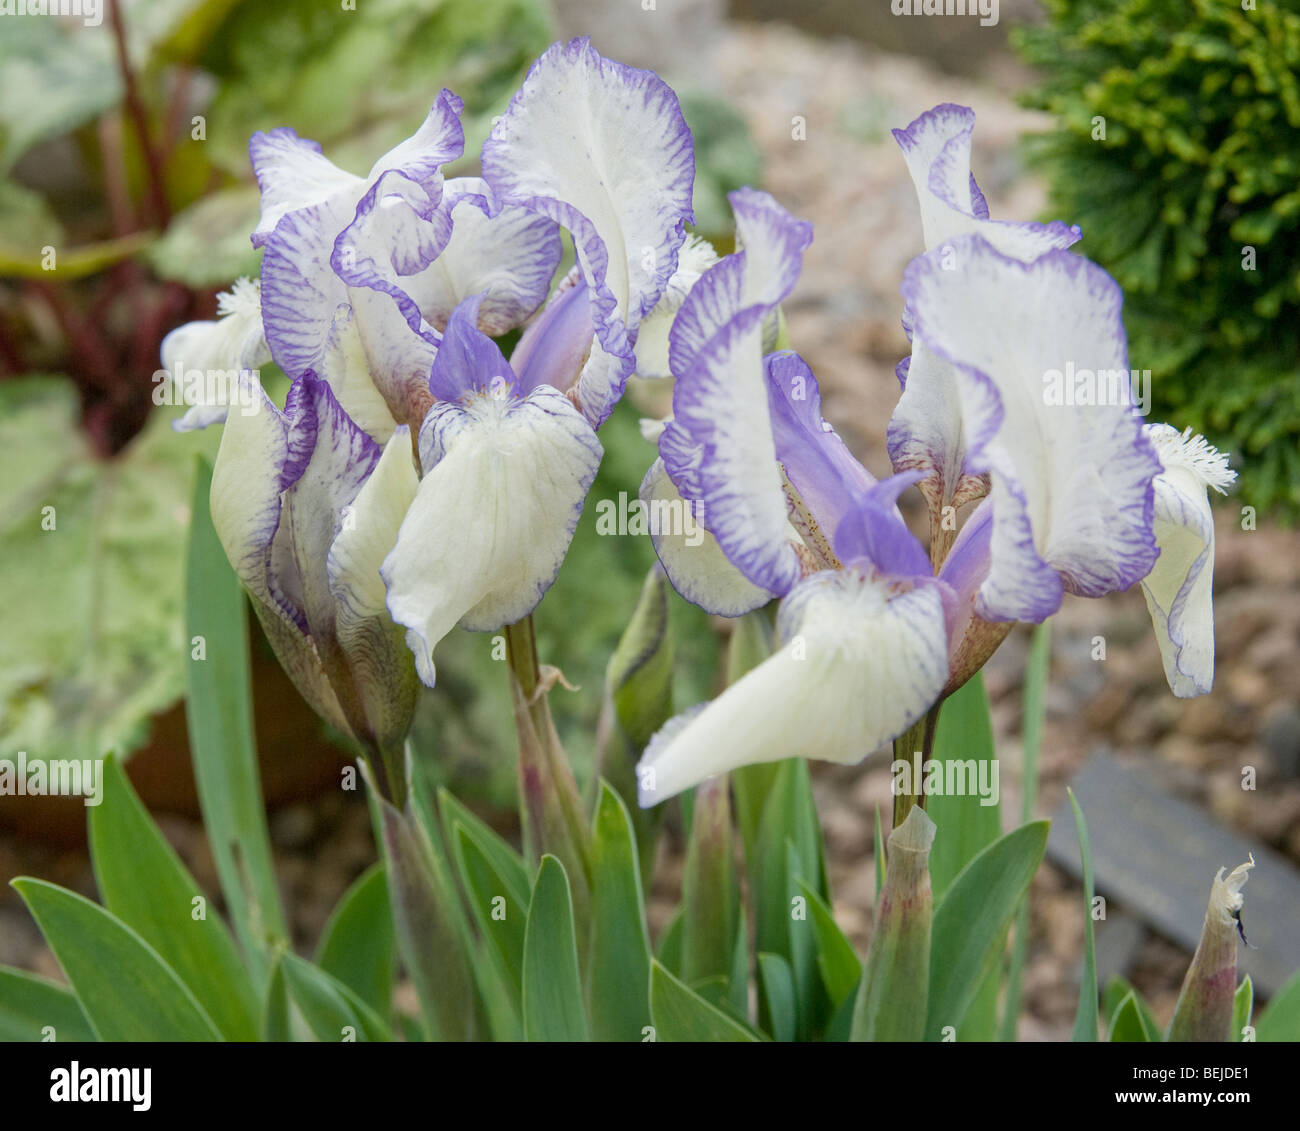 dwarf iris Stock Photo